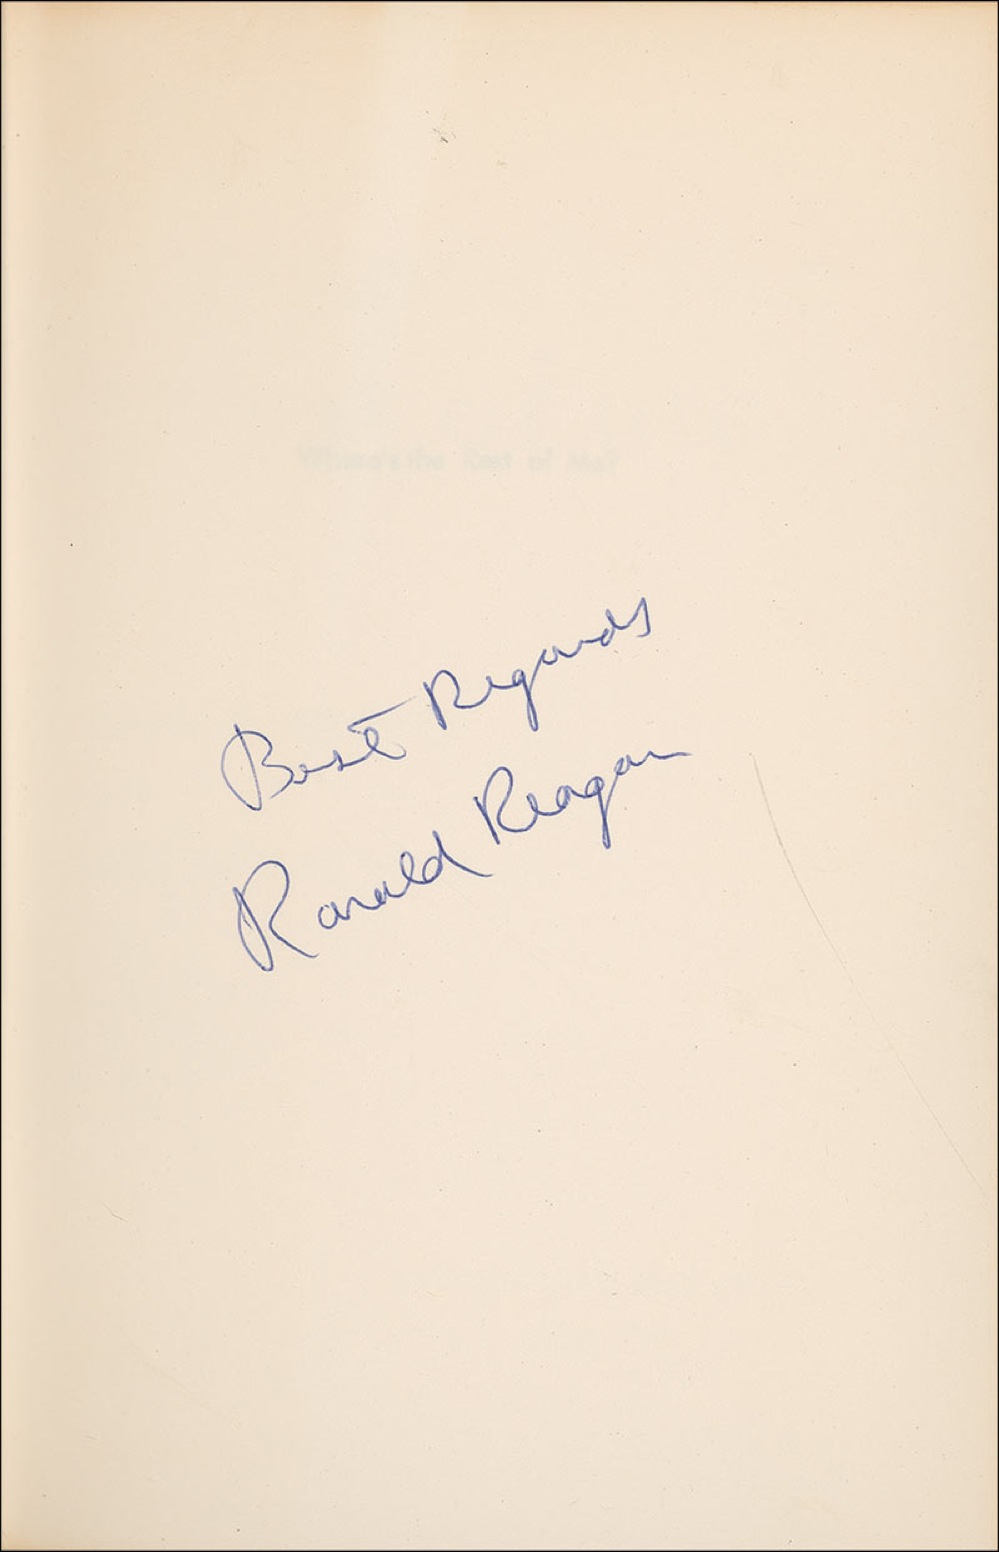 Lot #152 Ronald Reagan